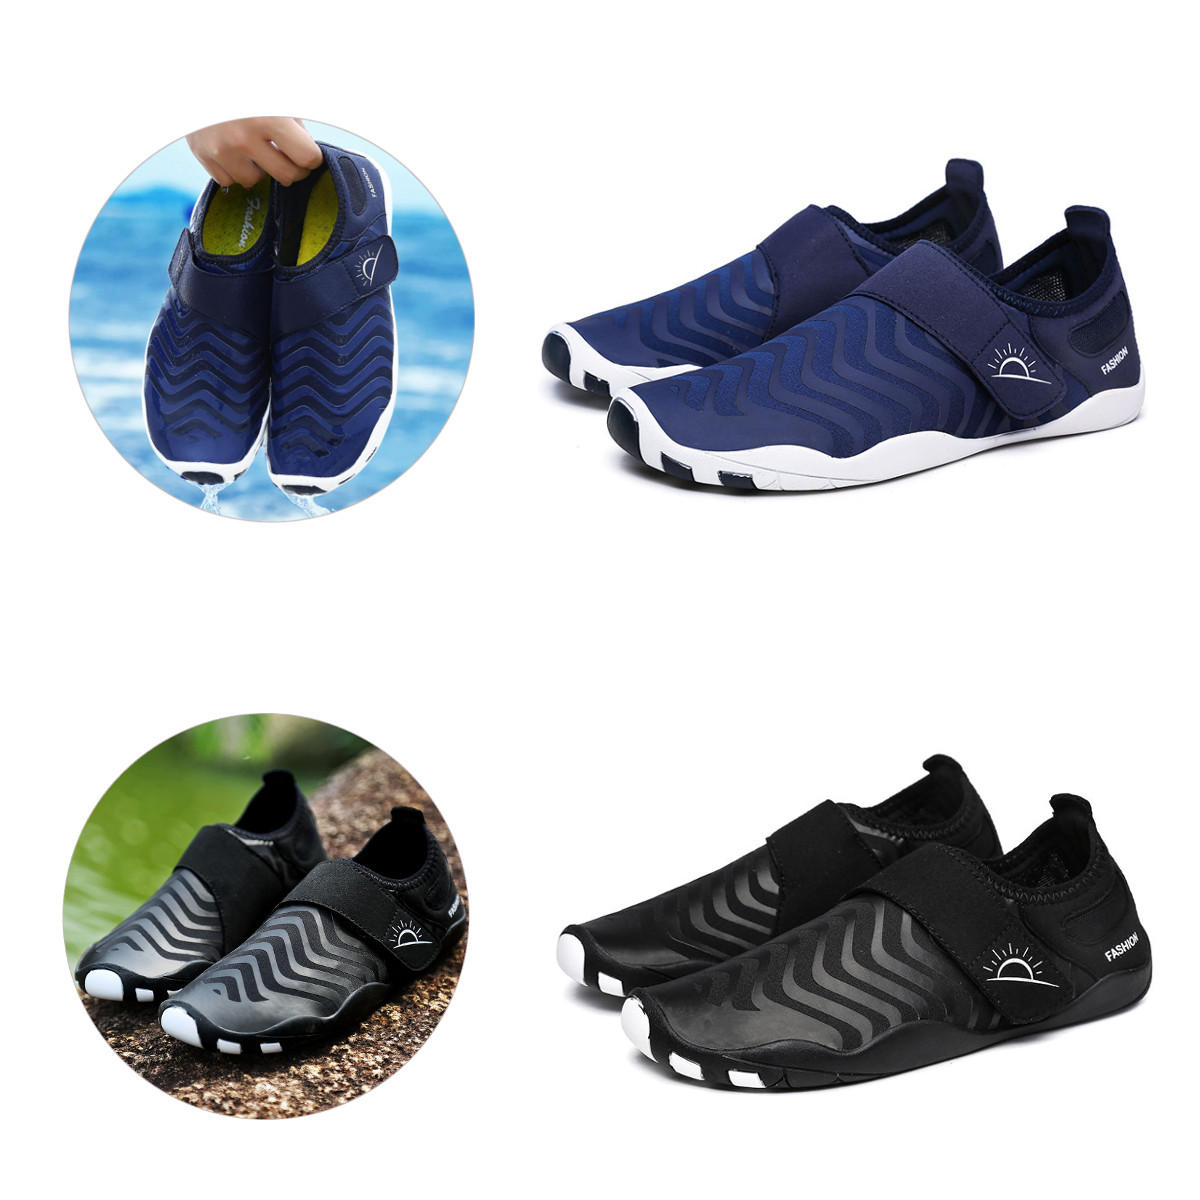 Gestreepte ultralichte waadschoenen, snel droog, gemakkelijk aan te trekken, geschikt voor buitensporten, zwemmen en yoga.